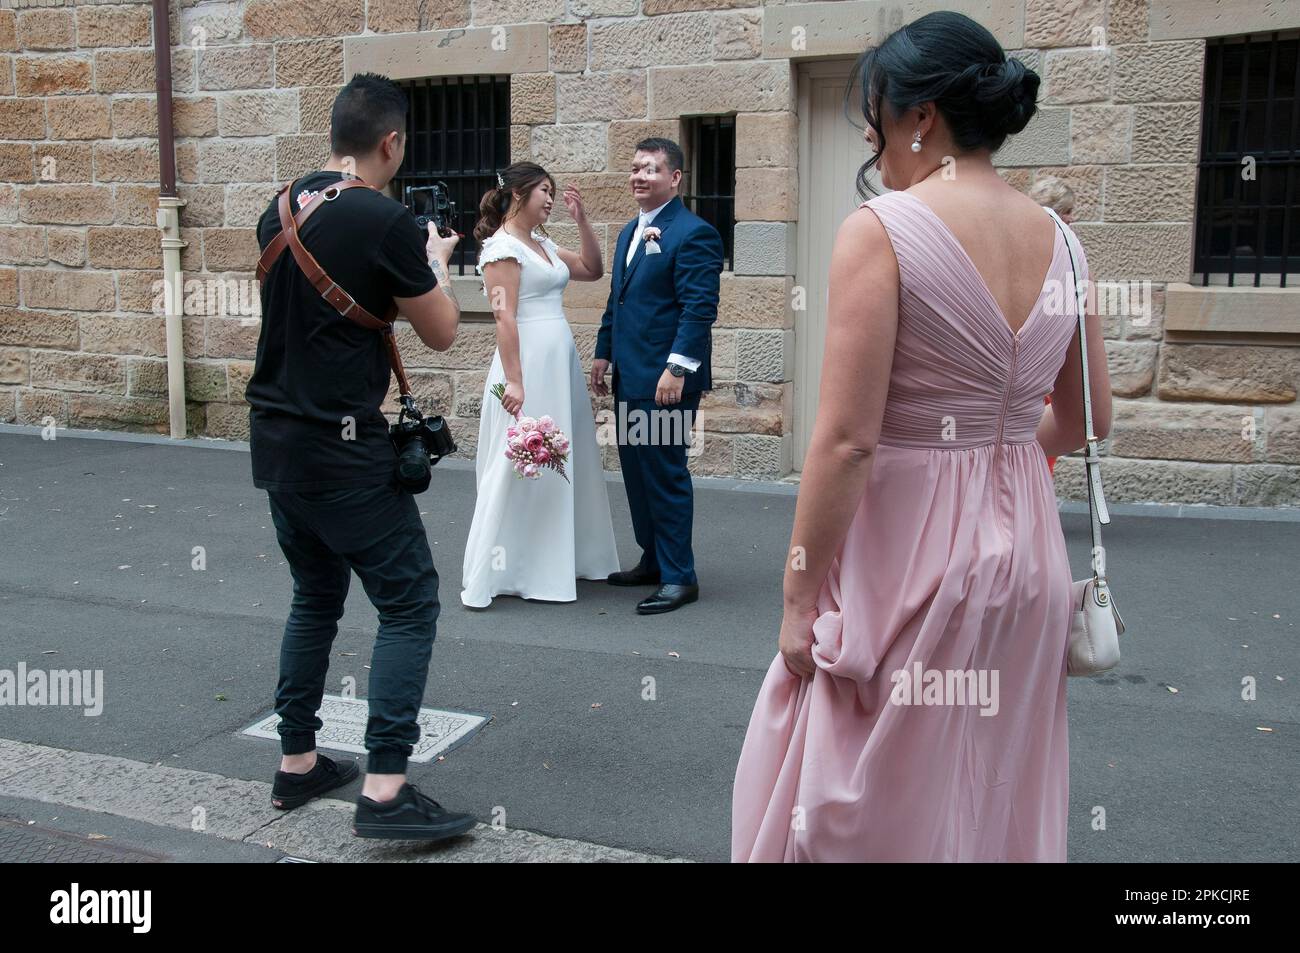 Organizadores de la industria de bodas gestionando una sesión de fotos para una pareja asiática, probablemente turistas extranjeros, en The Rocks, Sydney, Nueva Gales del Sur, Australia Foto de stock